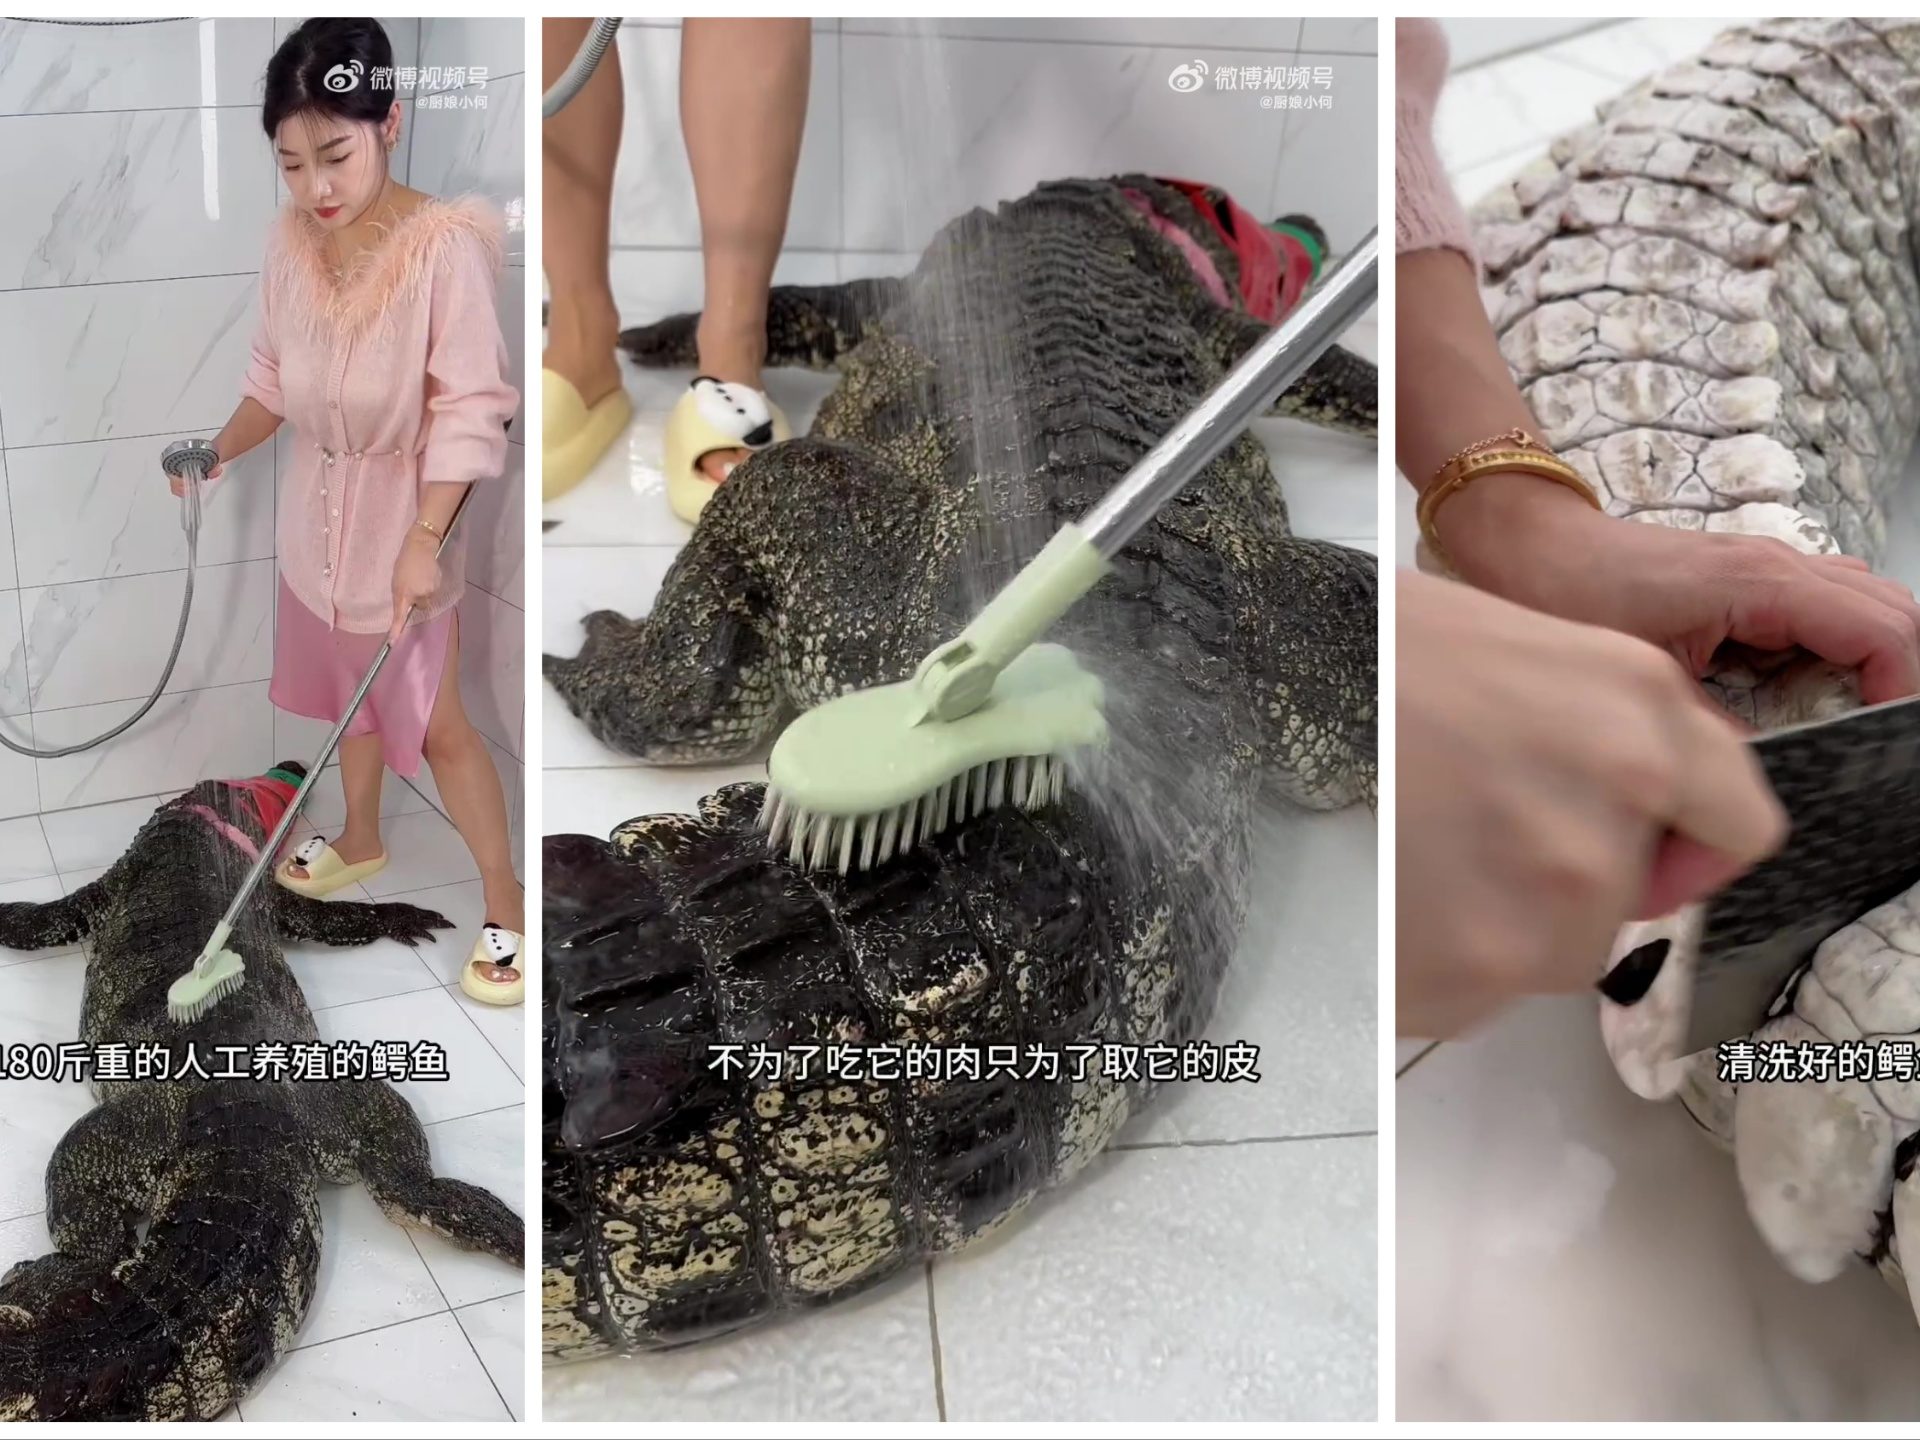 90 kg Alligator in einem viralen Video schlachten und kochen: Food-Blogger vom Sturm erfasst